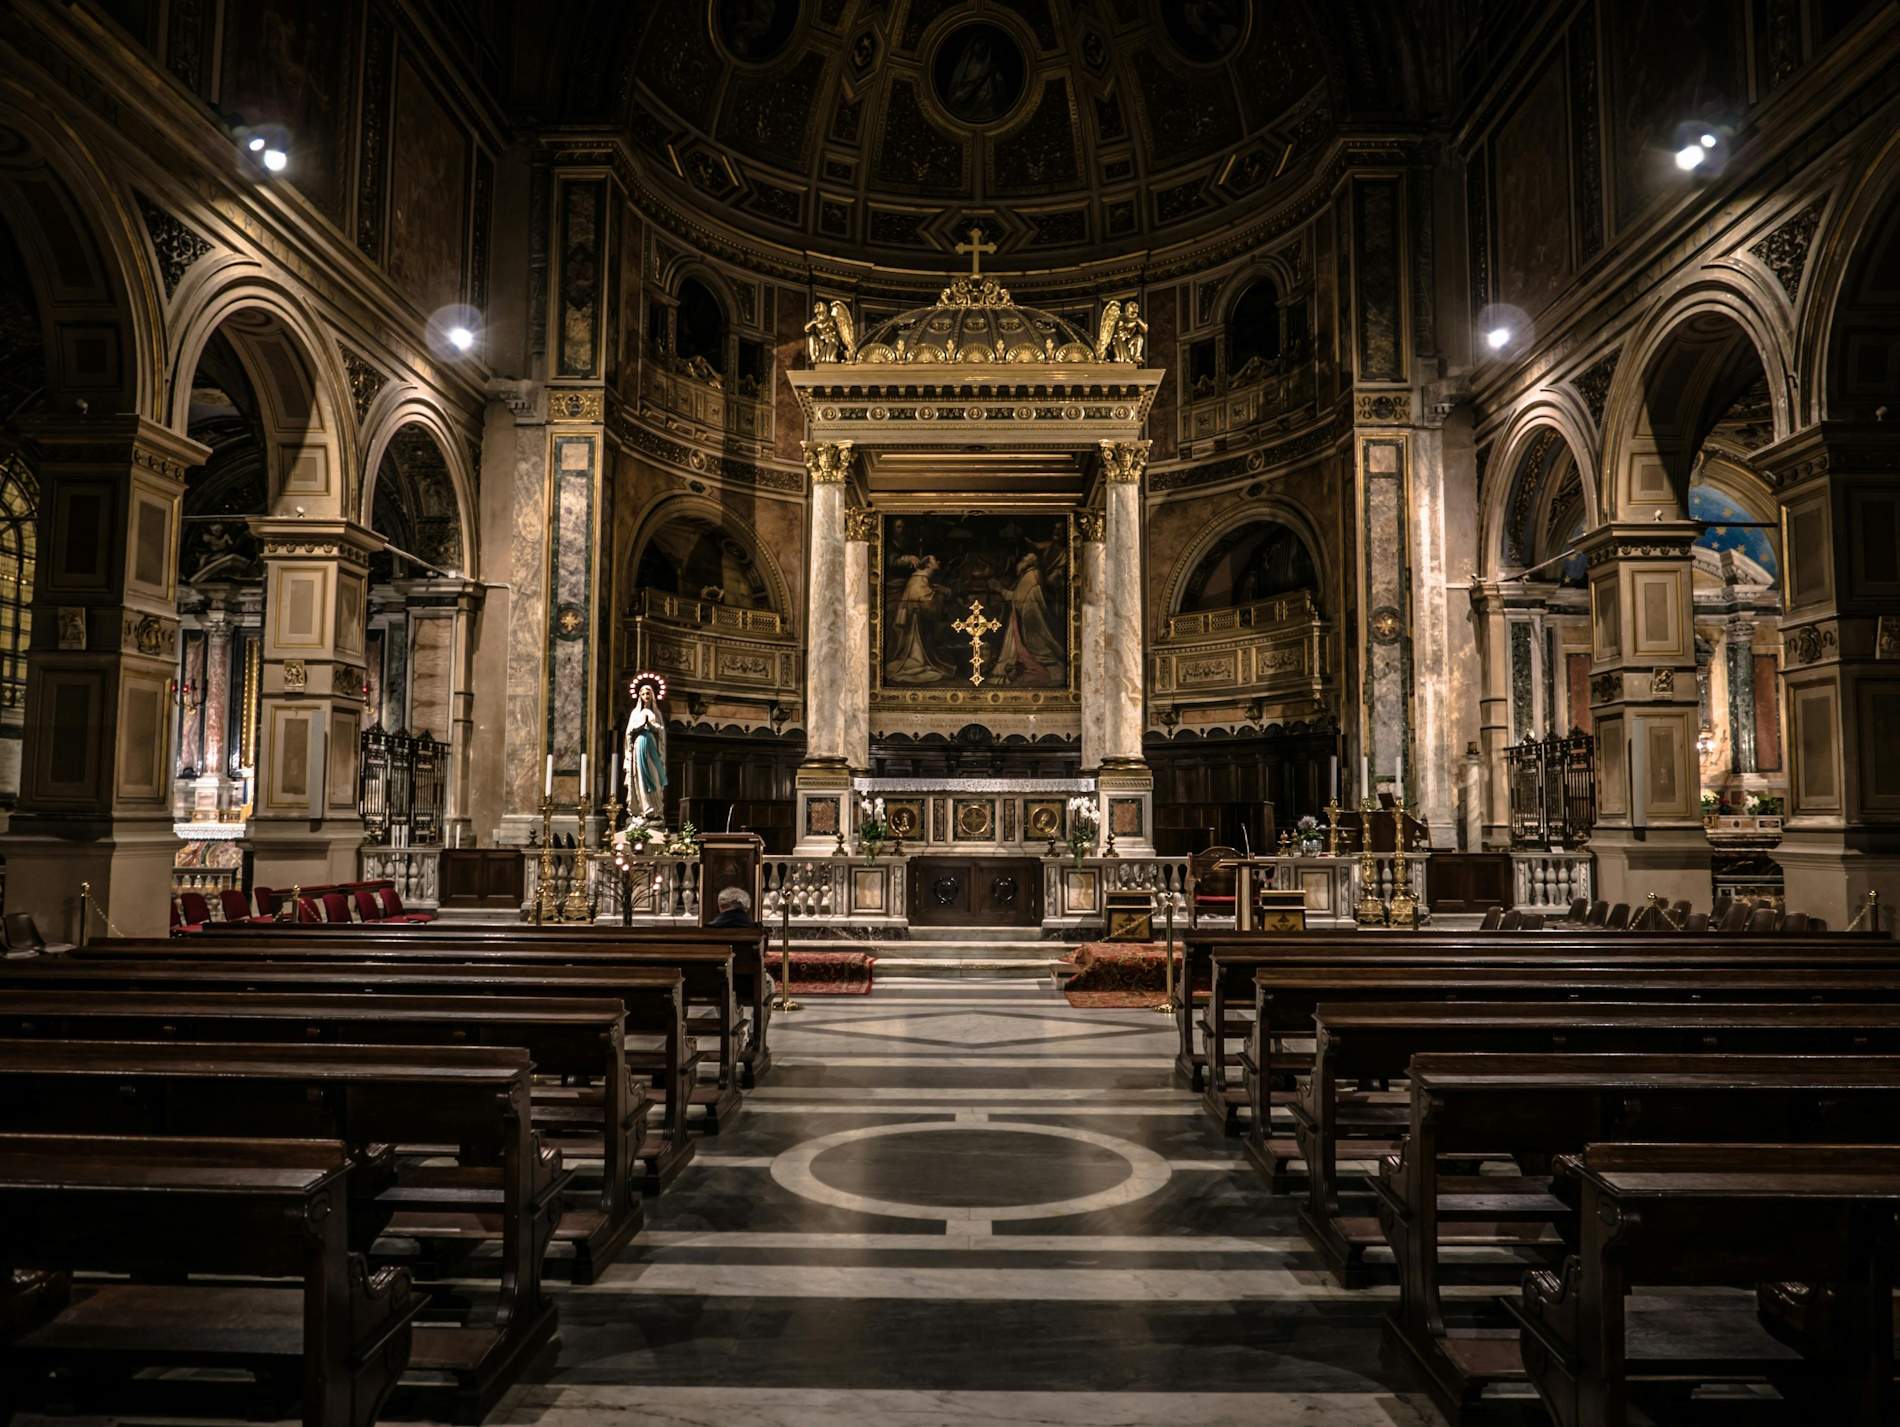 Les indemnitzacions que amaga l'església pels abusos sexuals: 72.000 euros per un cas a Salamanca